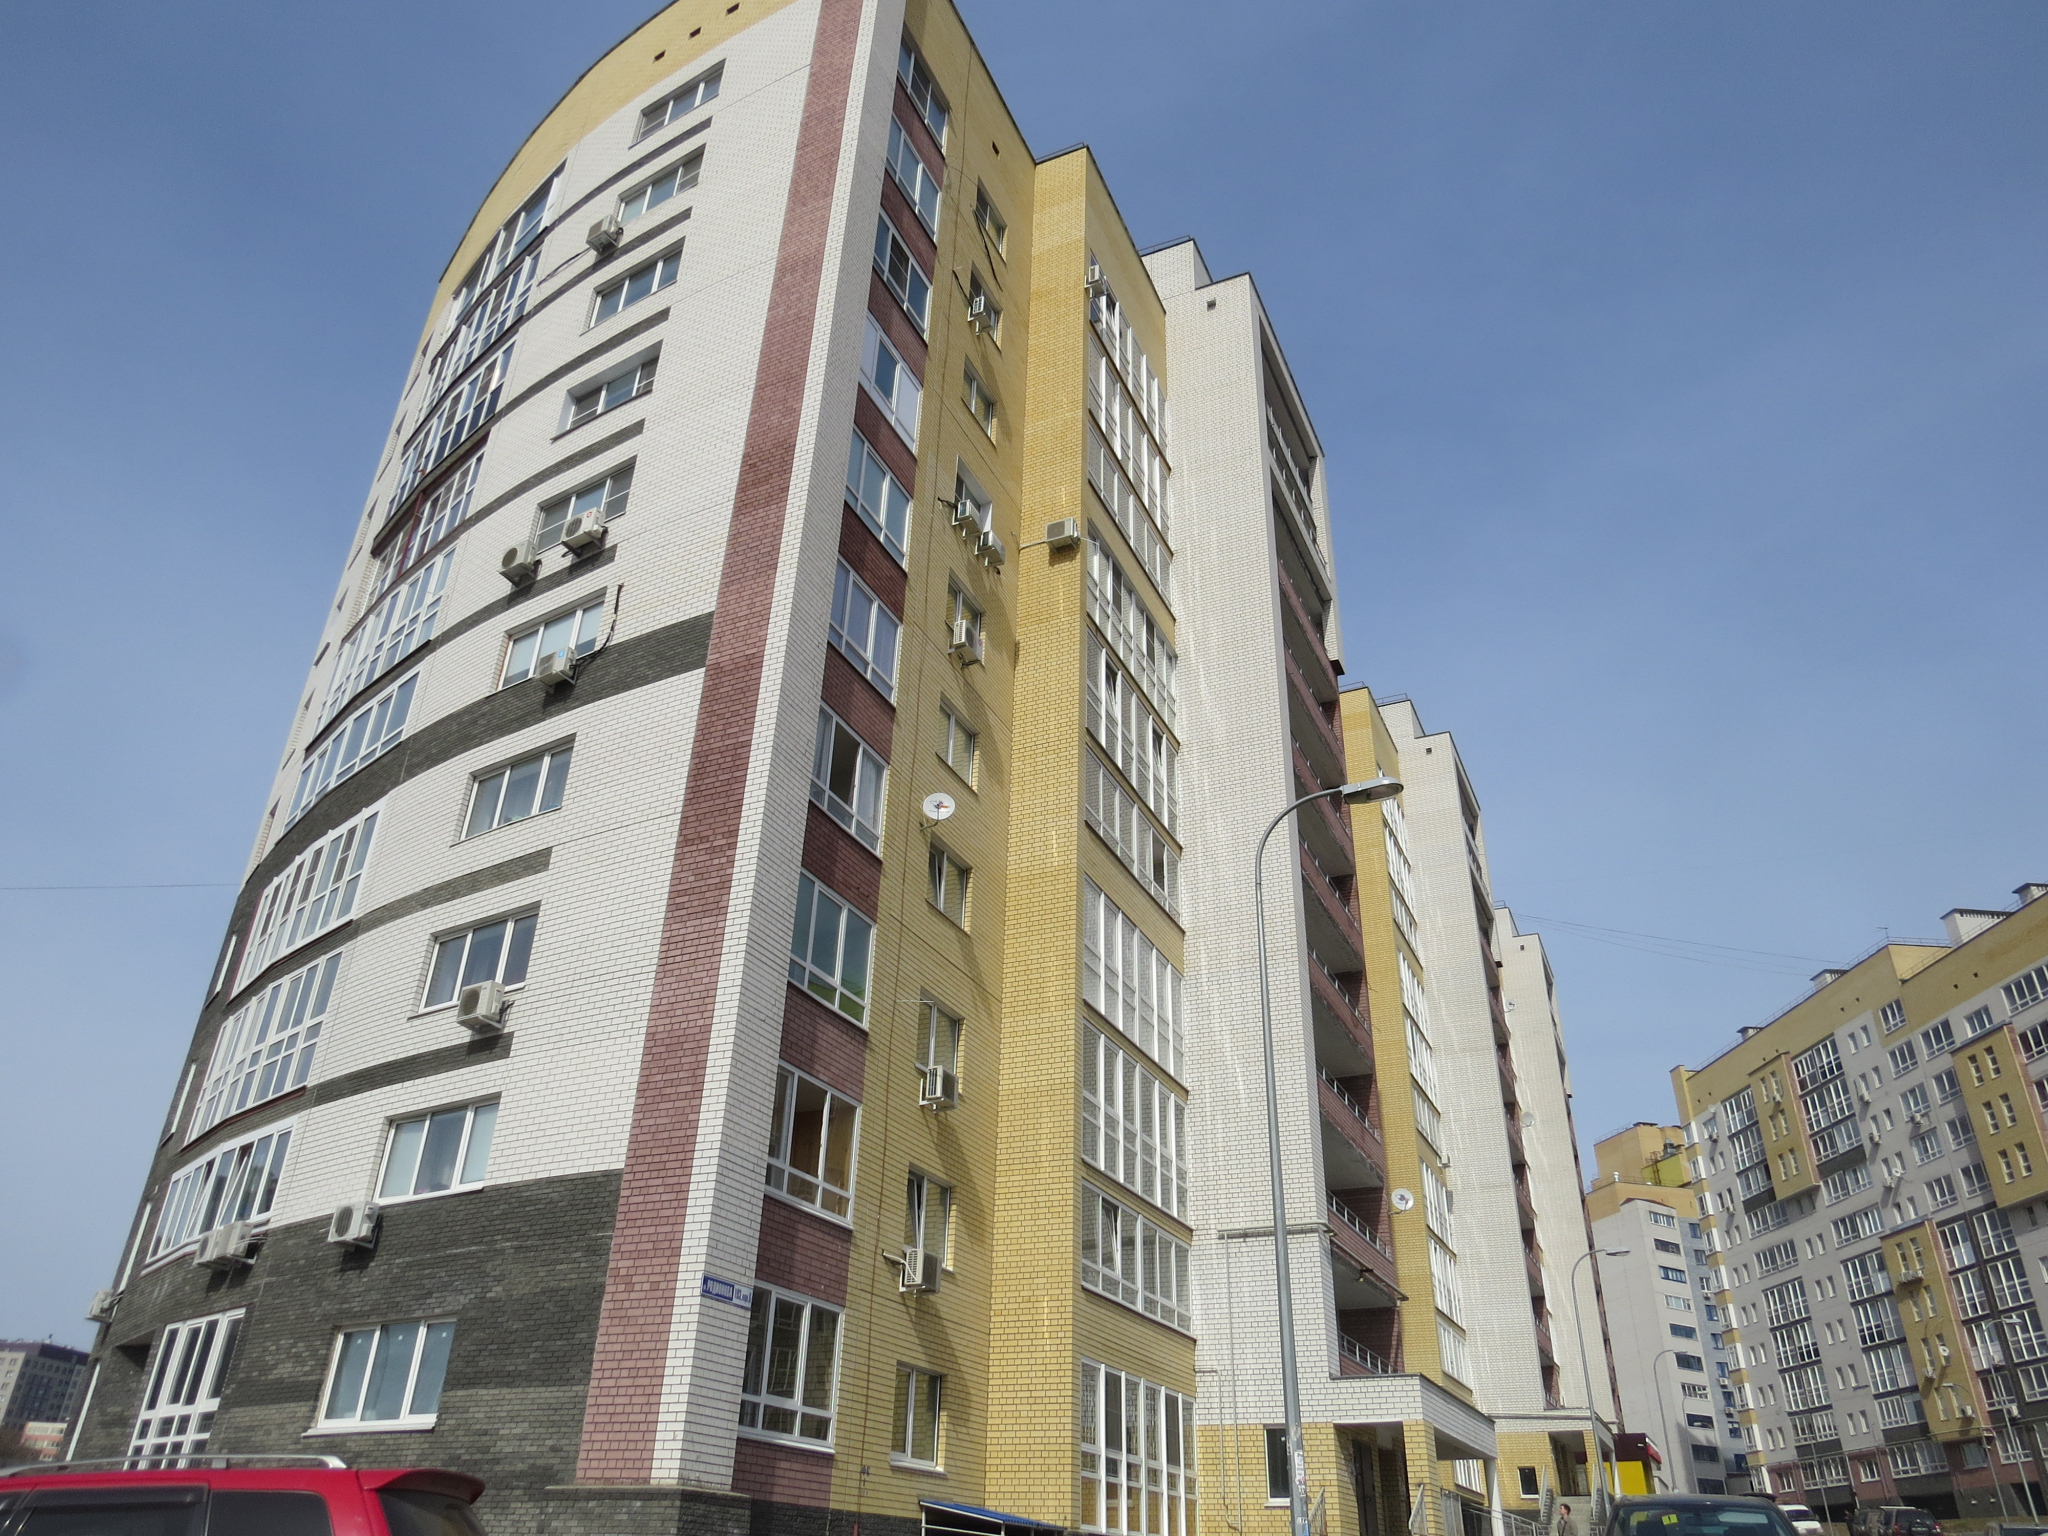 Бетонный козырек обрушился у подъеда жилого дома на улице Ковалихинской